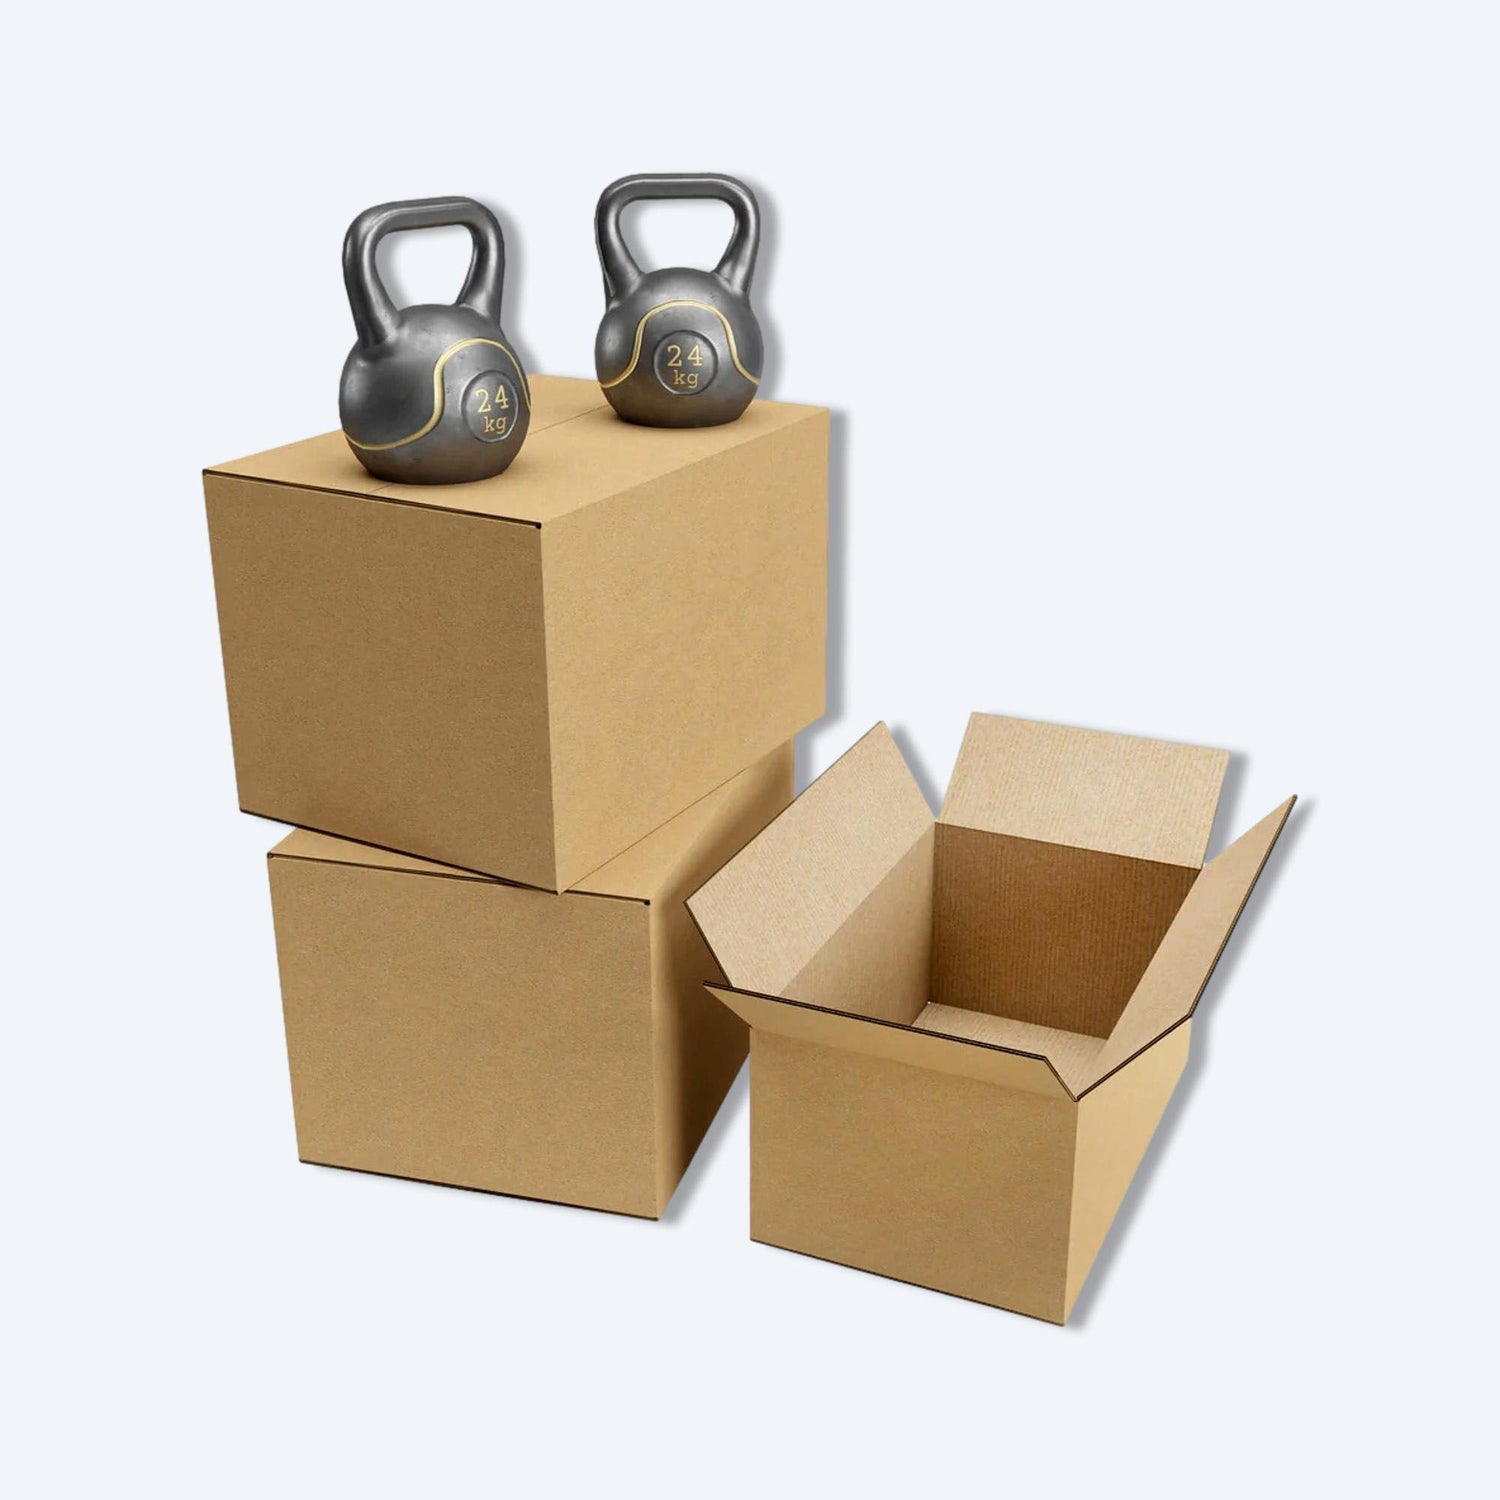 搬屋紙皮箱的堆放圖。各種不同尺寸、規格、種類的搬屋紙皮箱堆放在一起，適用於電子商務、移民、物流、倉儲、運輸、包裝及搬屋收納。